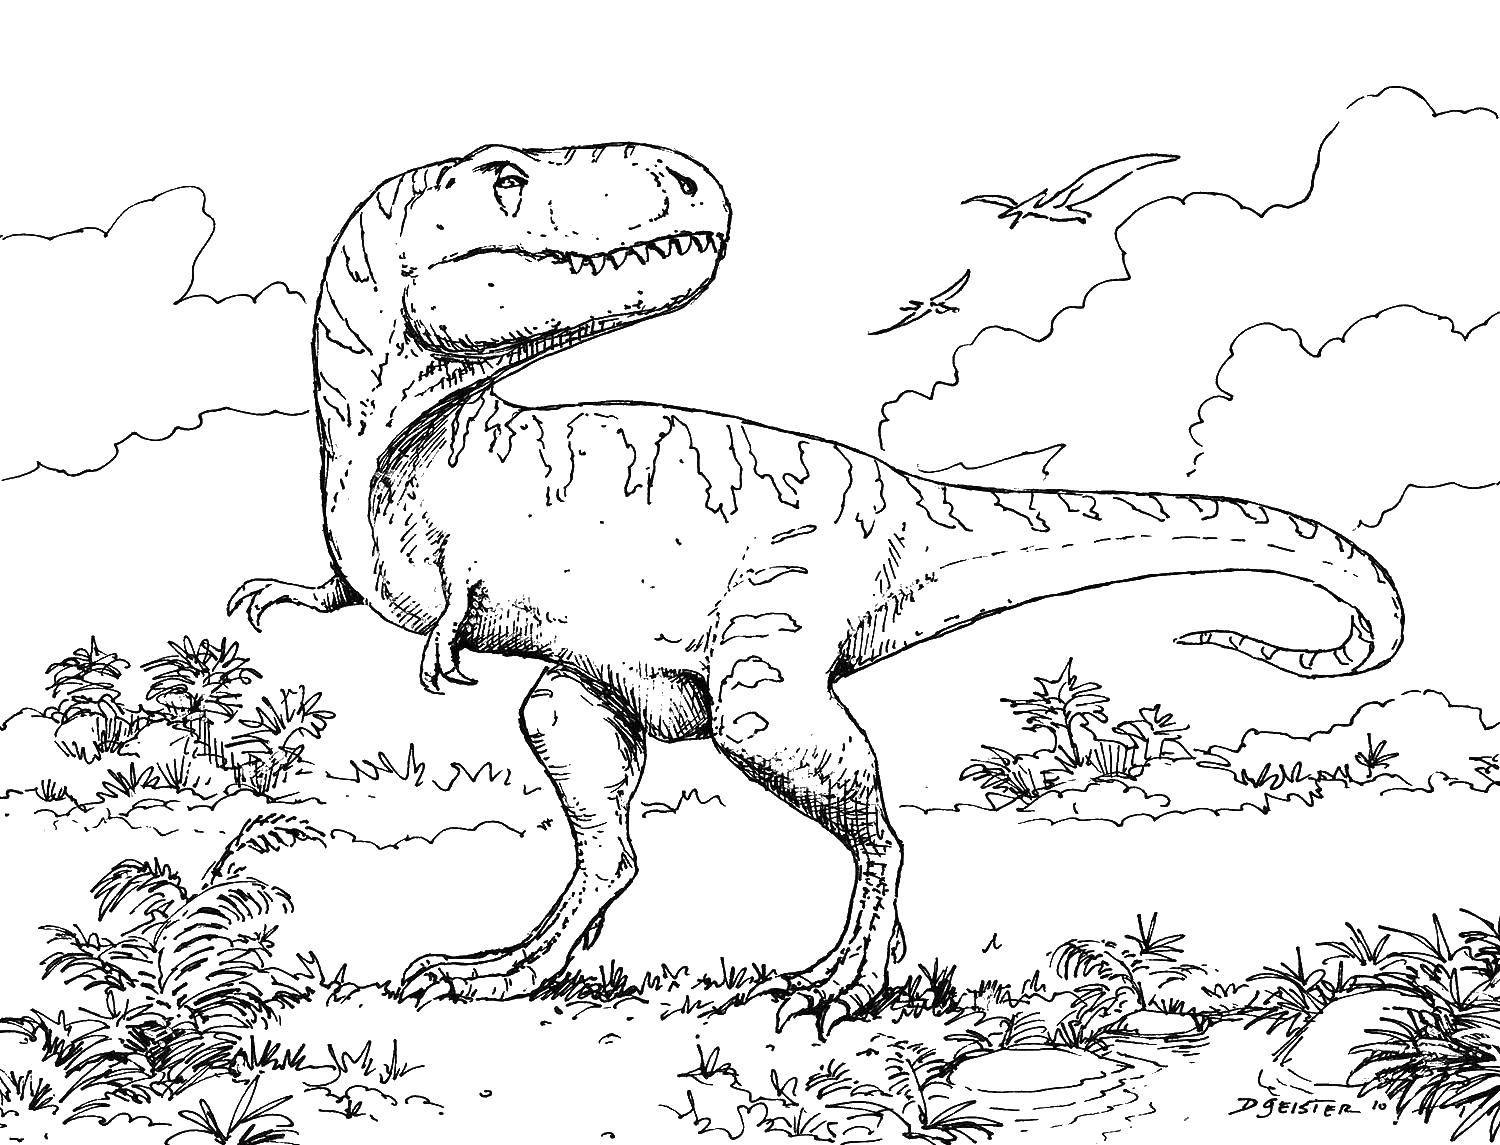 Название: Раскраска Крупный динозавр. Категория: парк юрского периода. Теги: парк юрского периода, динозавры.